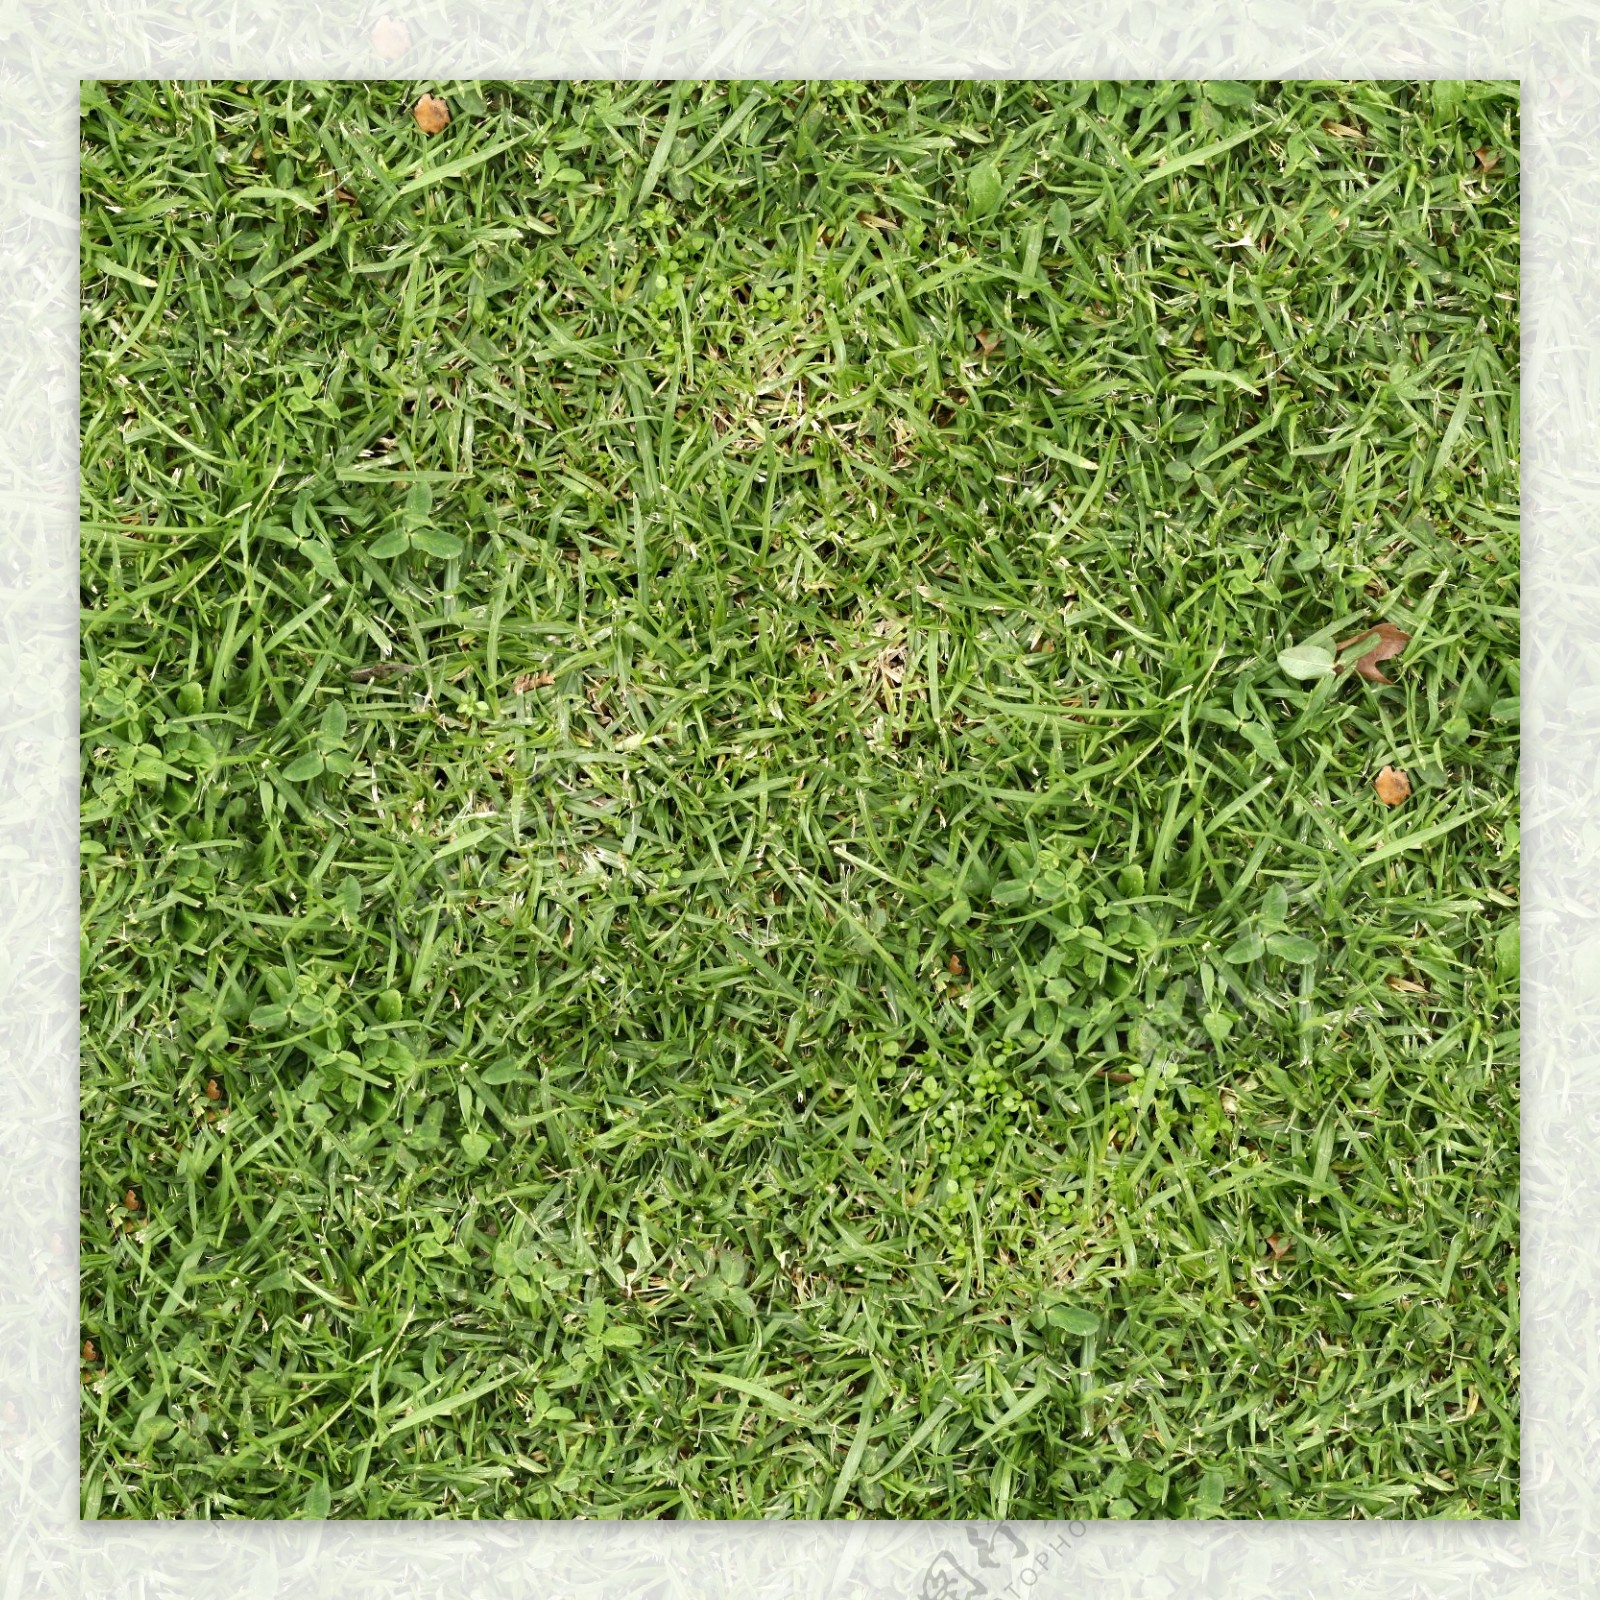 地面草坪摄影素材资料图片